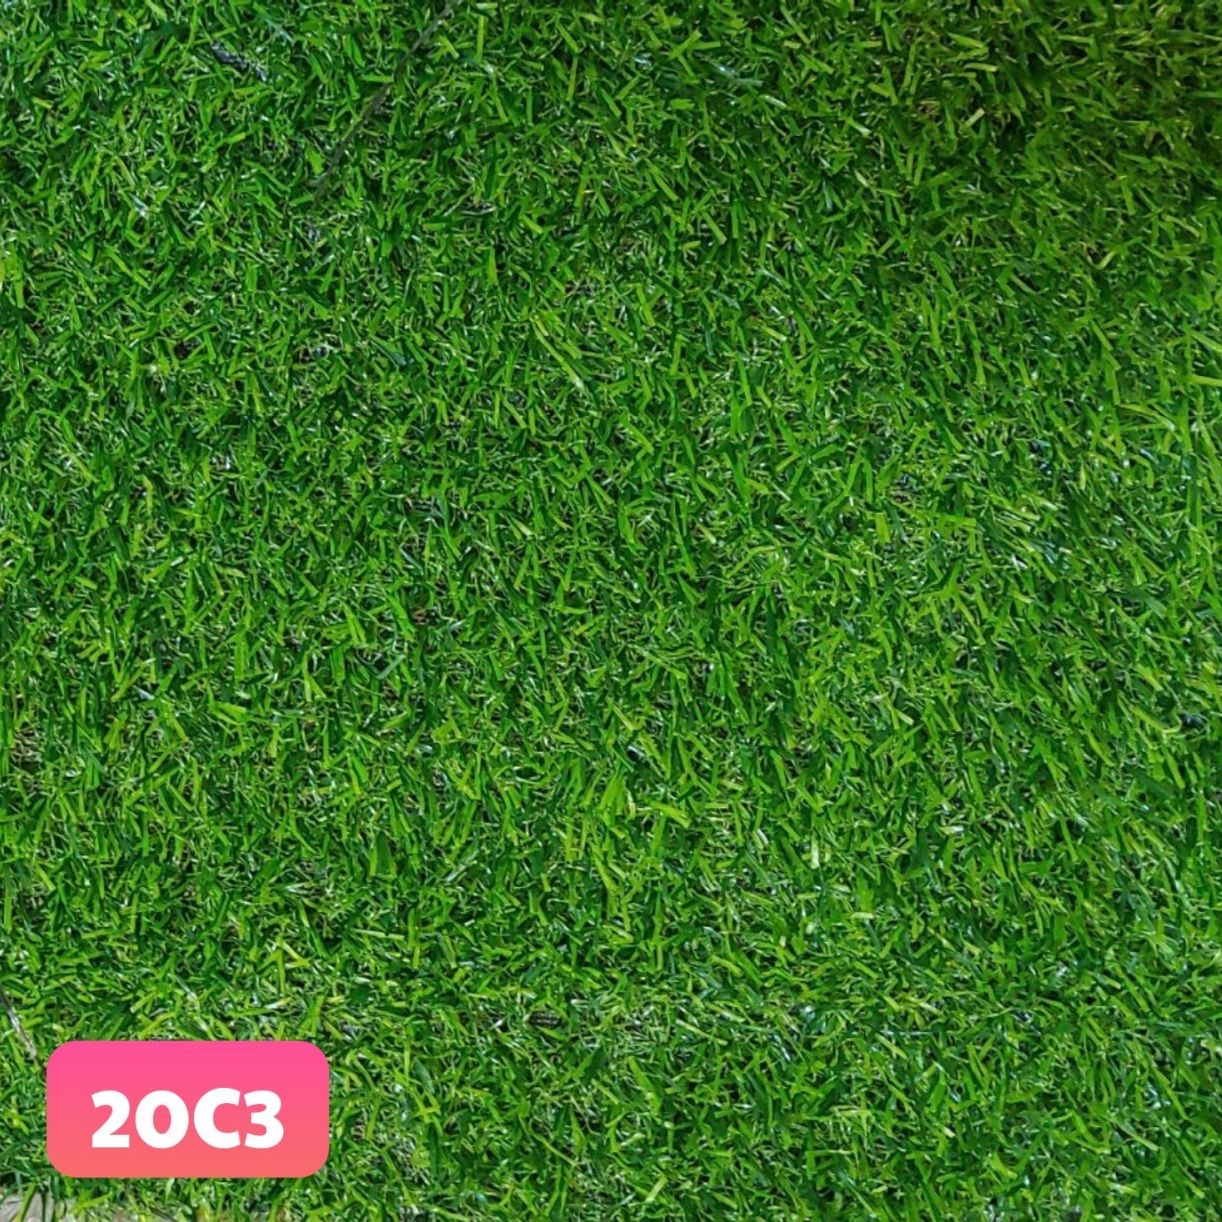 12m2cỏ nhân tạo 2cm, thảm cỏ nhân tạo, cỏ lót sàn, sử dụng trong nhà - VNG